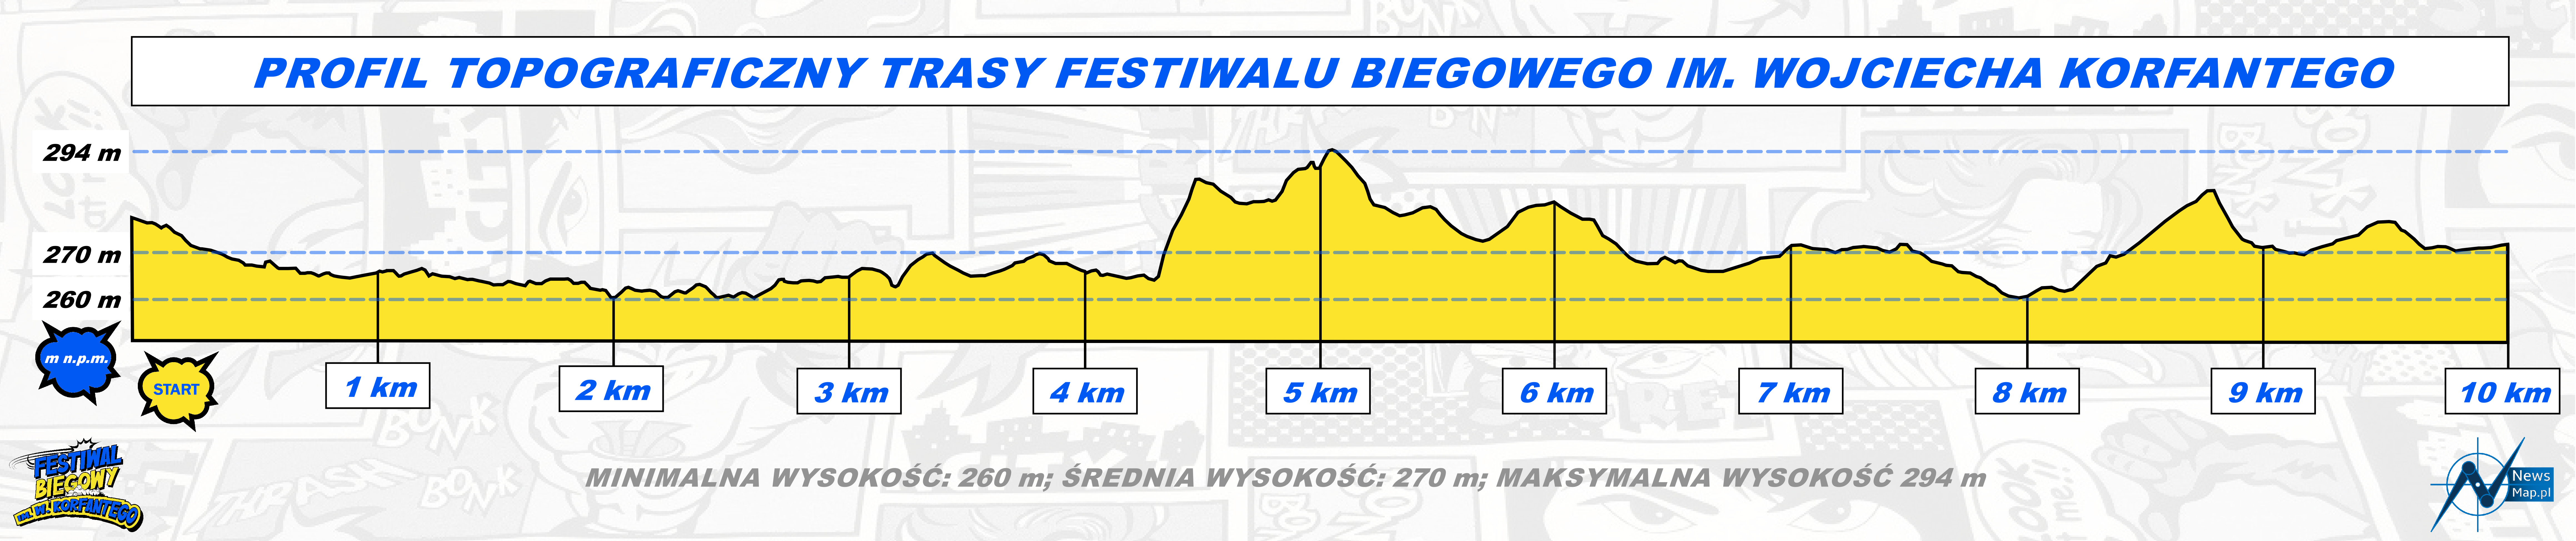 Festiwal im. Wojciecha Korfantego - profil topograficzny